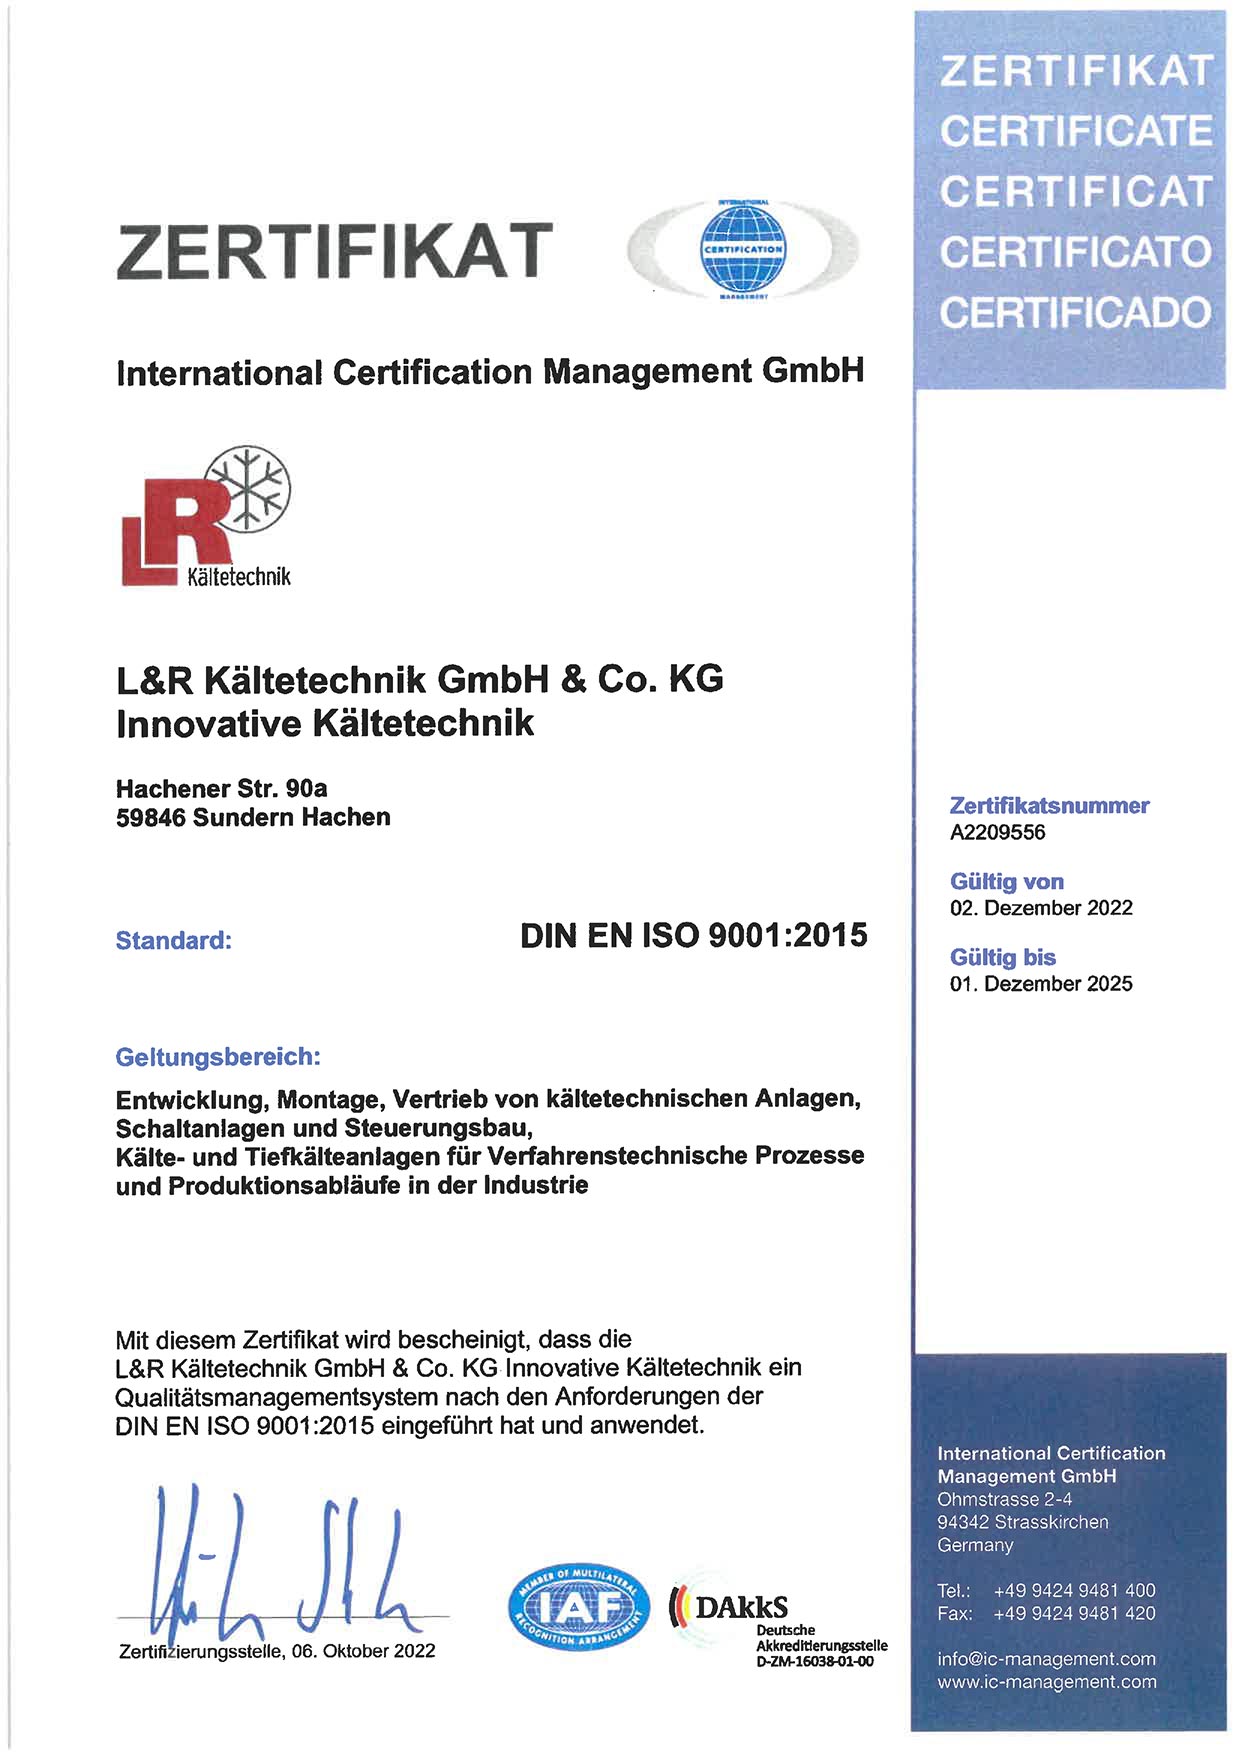 zertifikat-DIN-EN-ISO-9001:2015